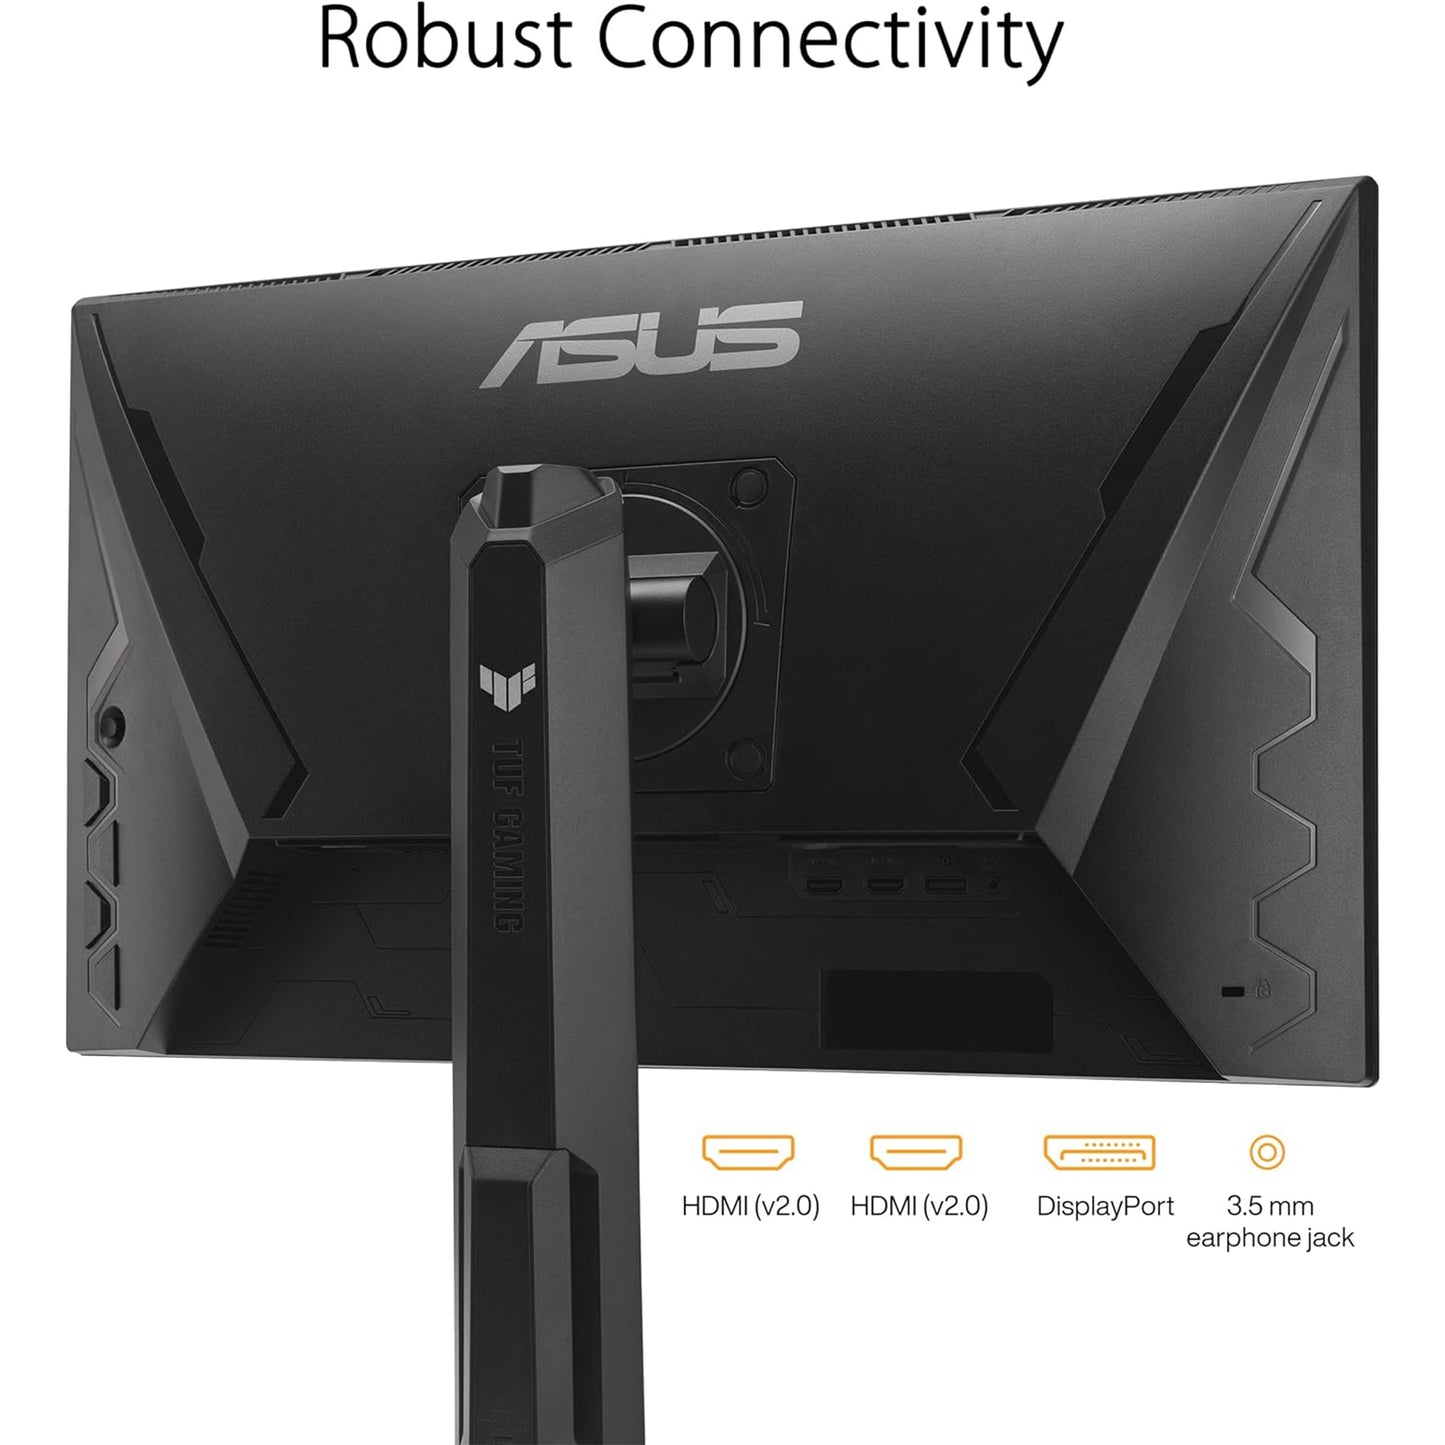 شاشة ASUS TUF Gaming مقاس 24 بوصة (23.8 بوصة قابلة للعرض) بدقة 1080 بكسل (VG249QL3A) - دقة عالية كاملة، 180 هرتز، 1 مللي ثانية، تقنية IPS سريعة، ELMB، FreeSync Premium، متوافقة مع G-SYNC، مكبرات صوت، DisplayPort، ارتفاع قابل للتعديل